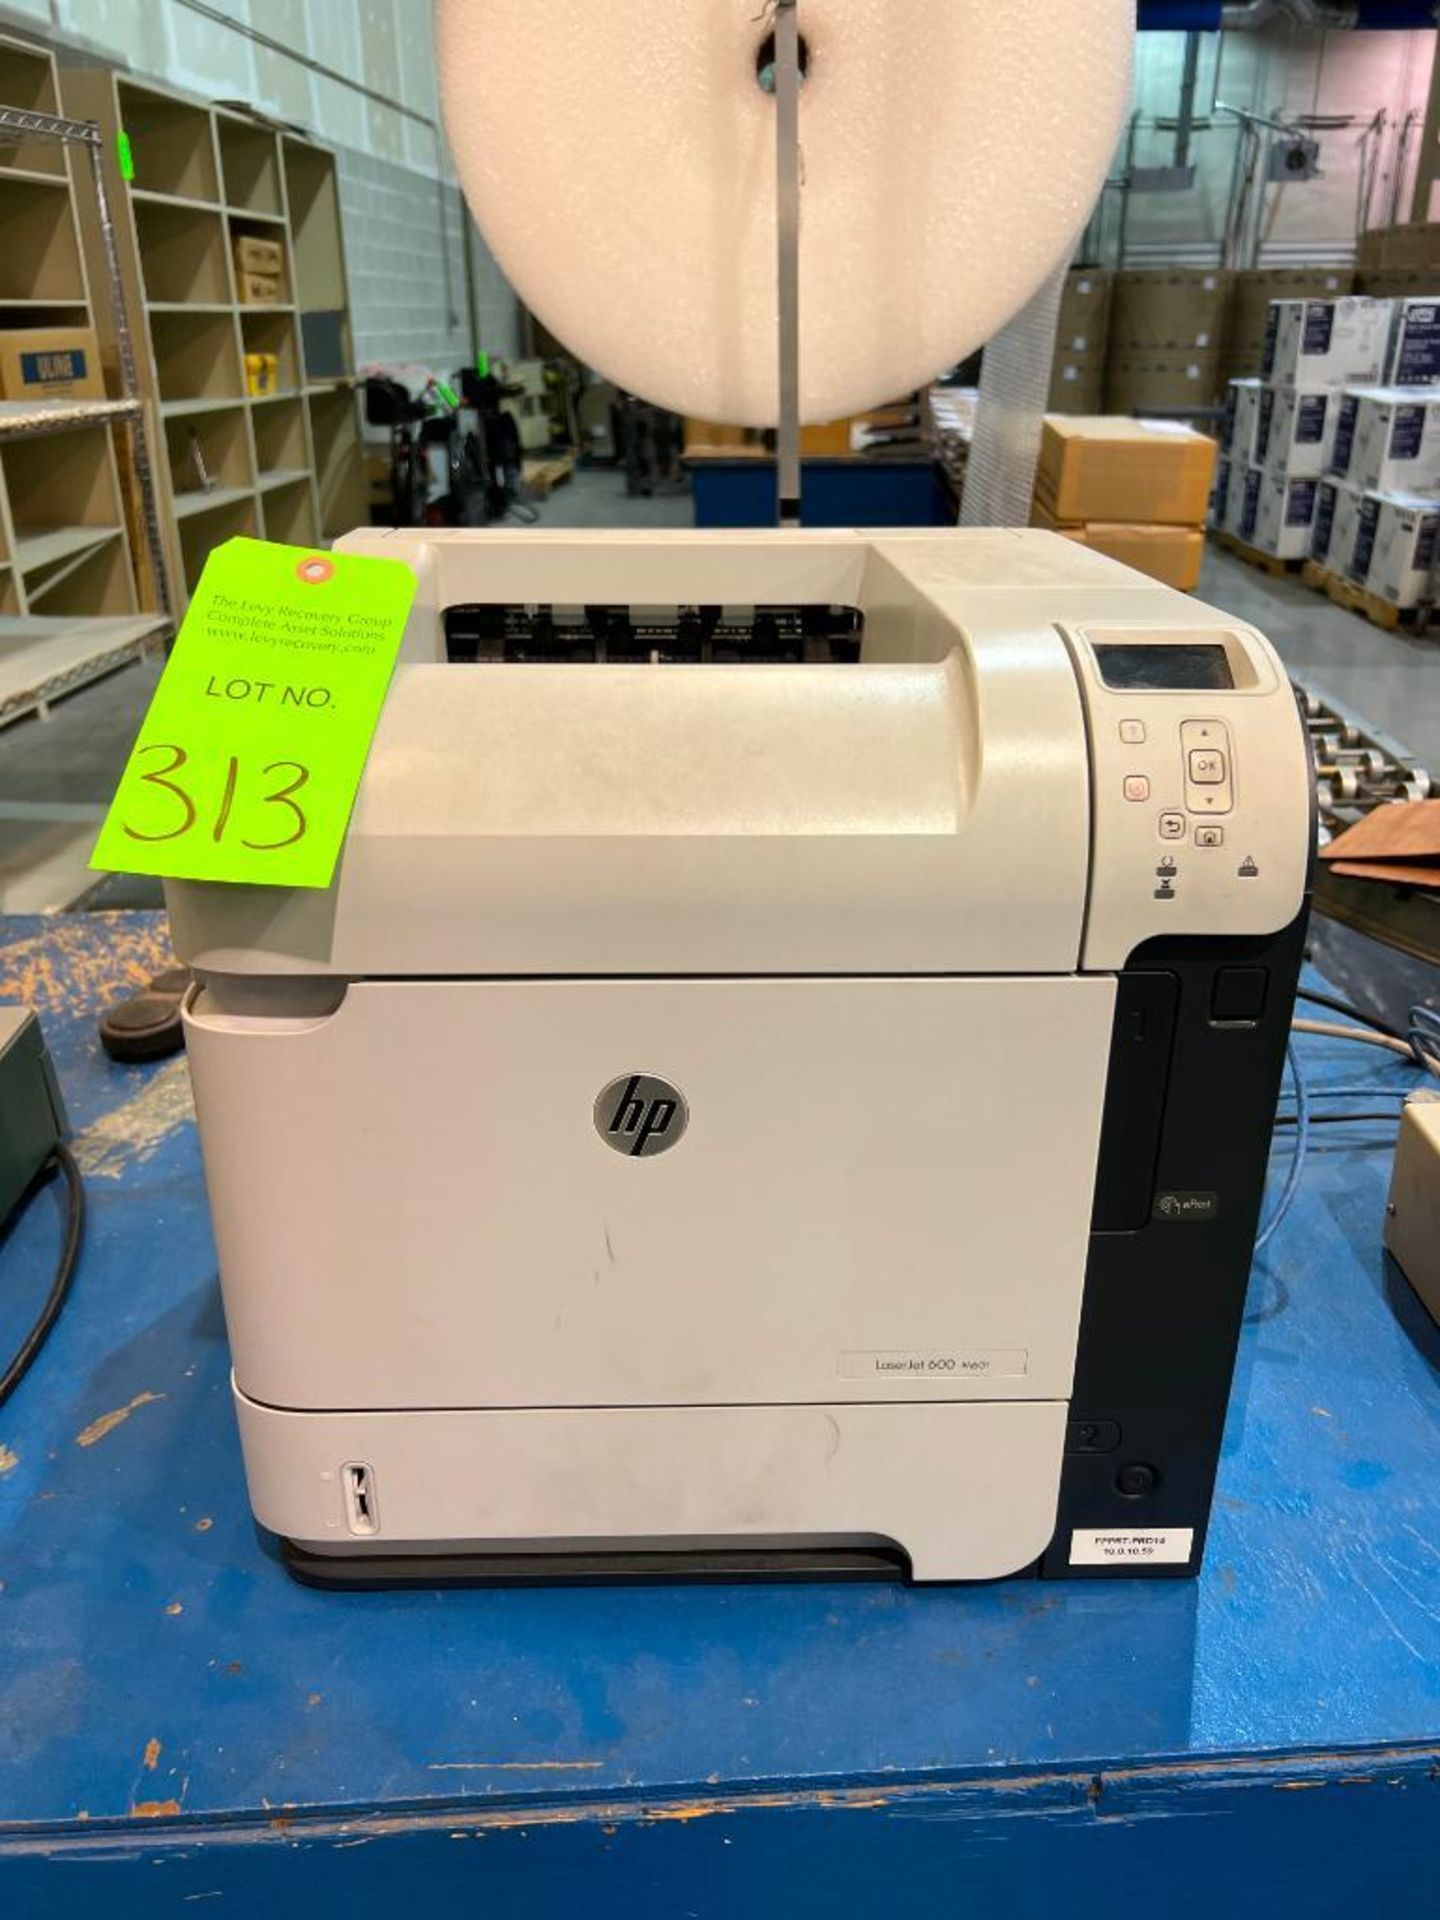 Hewlett-Packard Model600 M601 LaserJet Printer